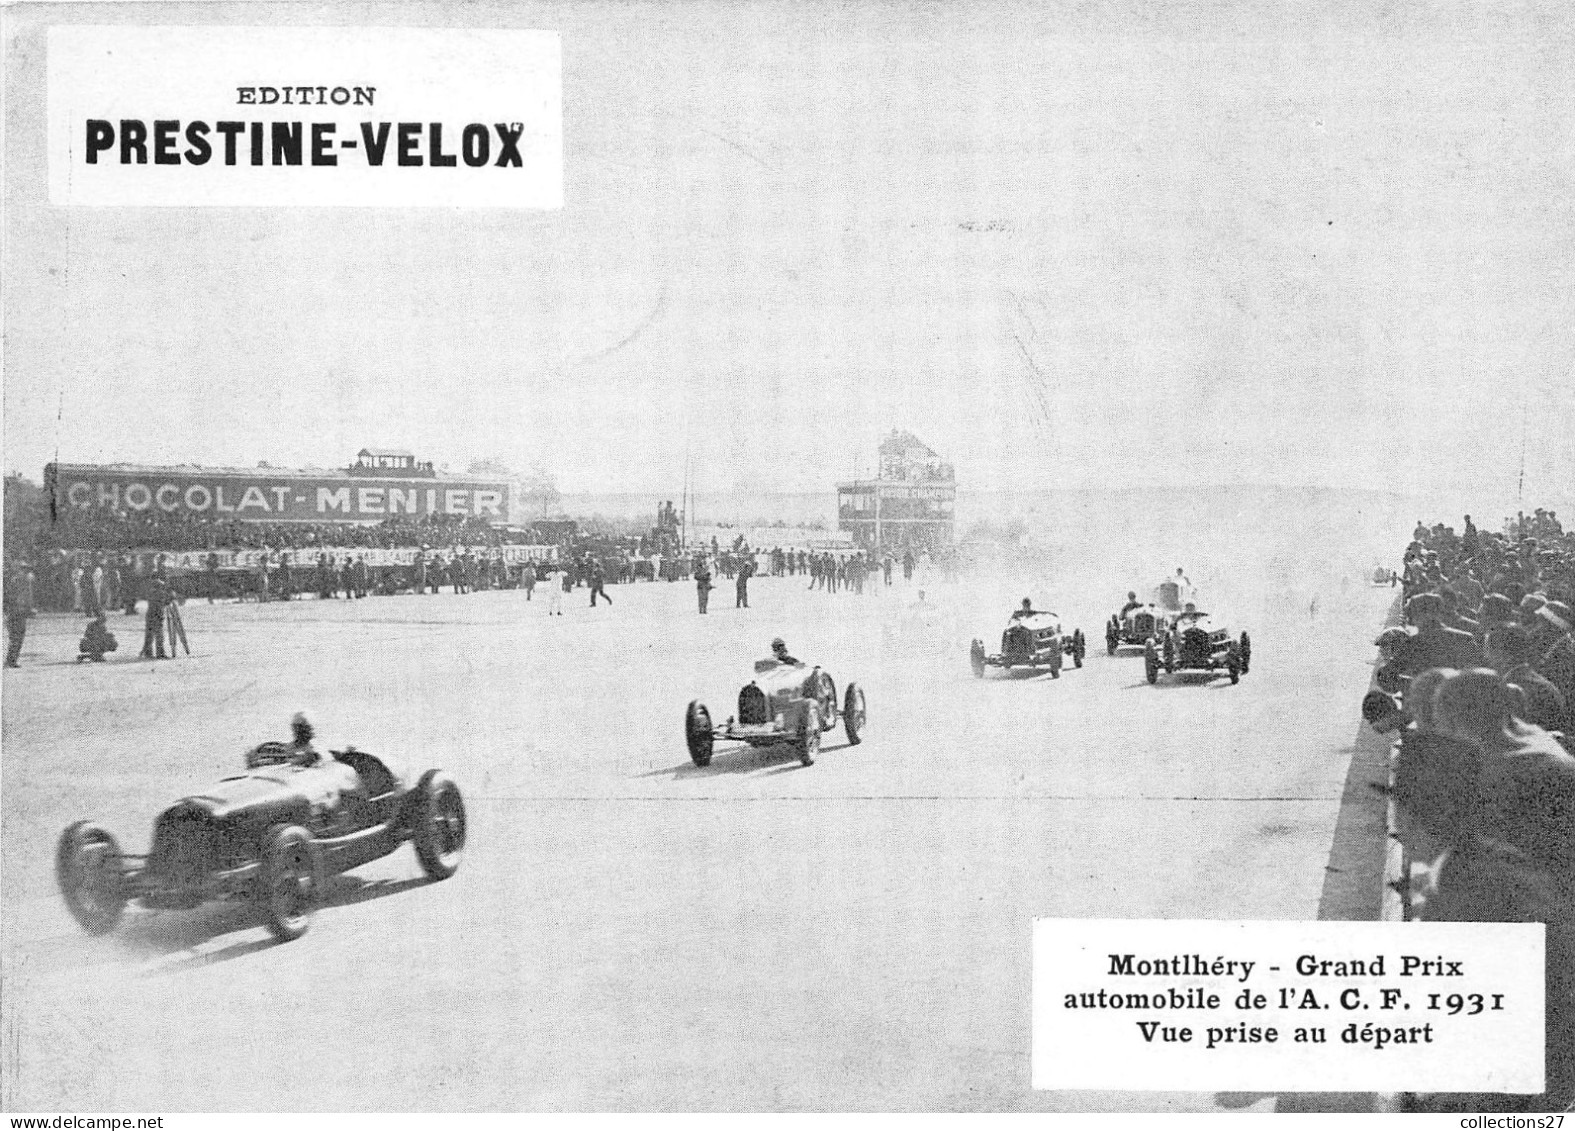 MONTLHERY- GRAND PRIX AUTOMOBILE DE L' A.C.F. I 1931 VUE PRISE AU DEPART - Sports